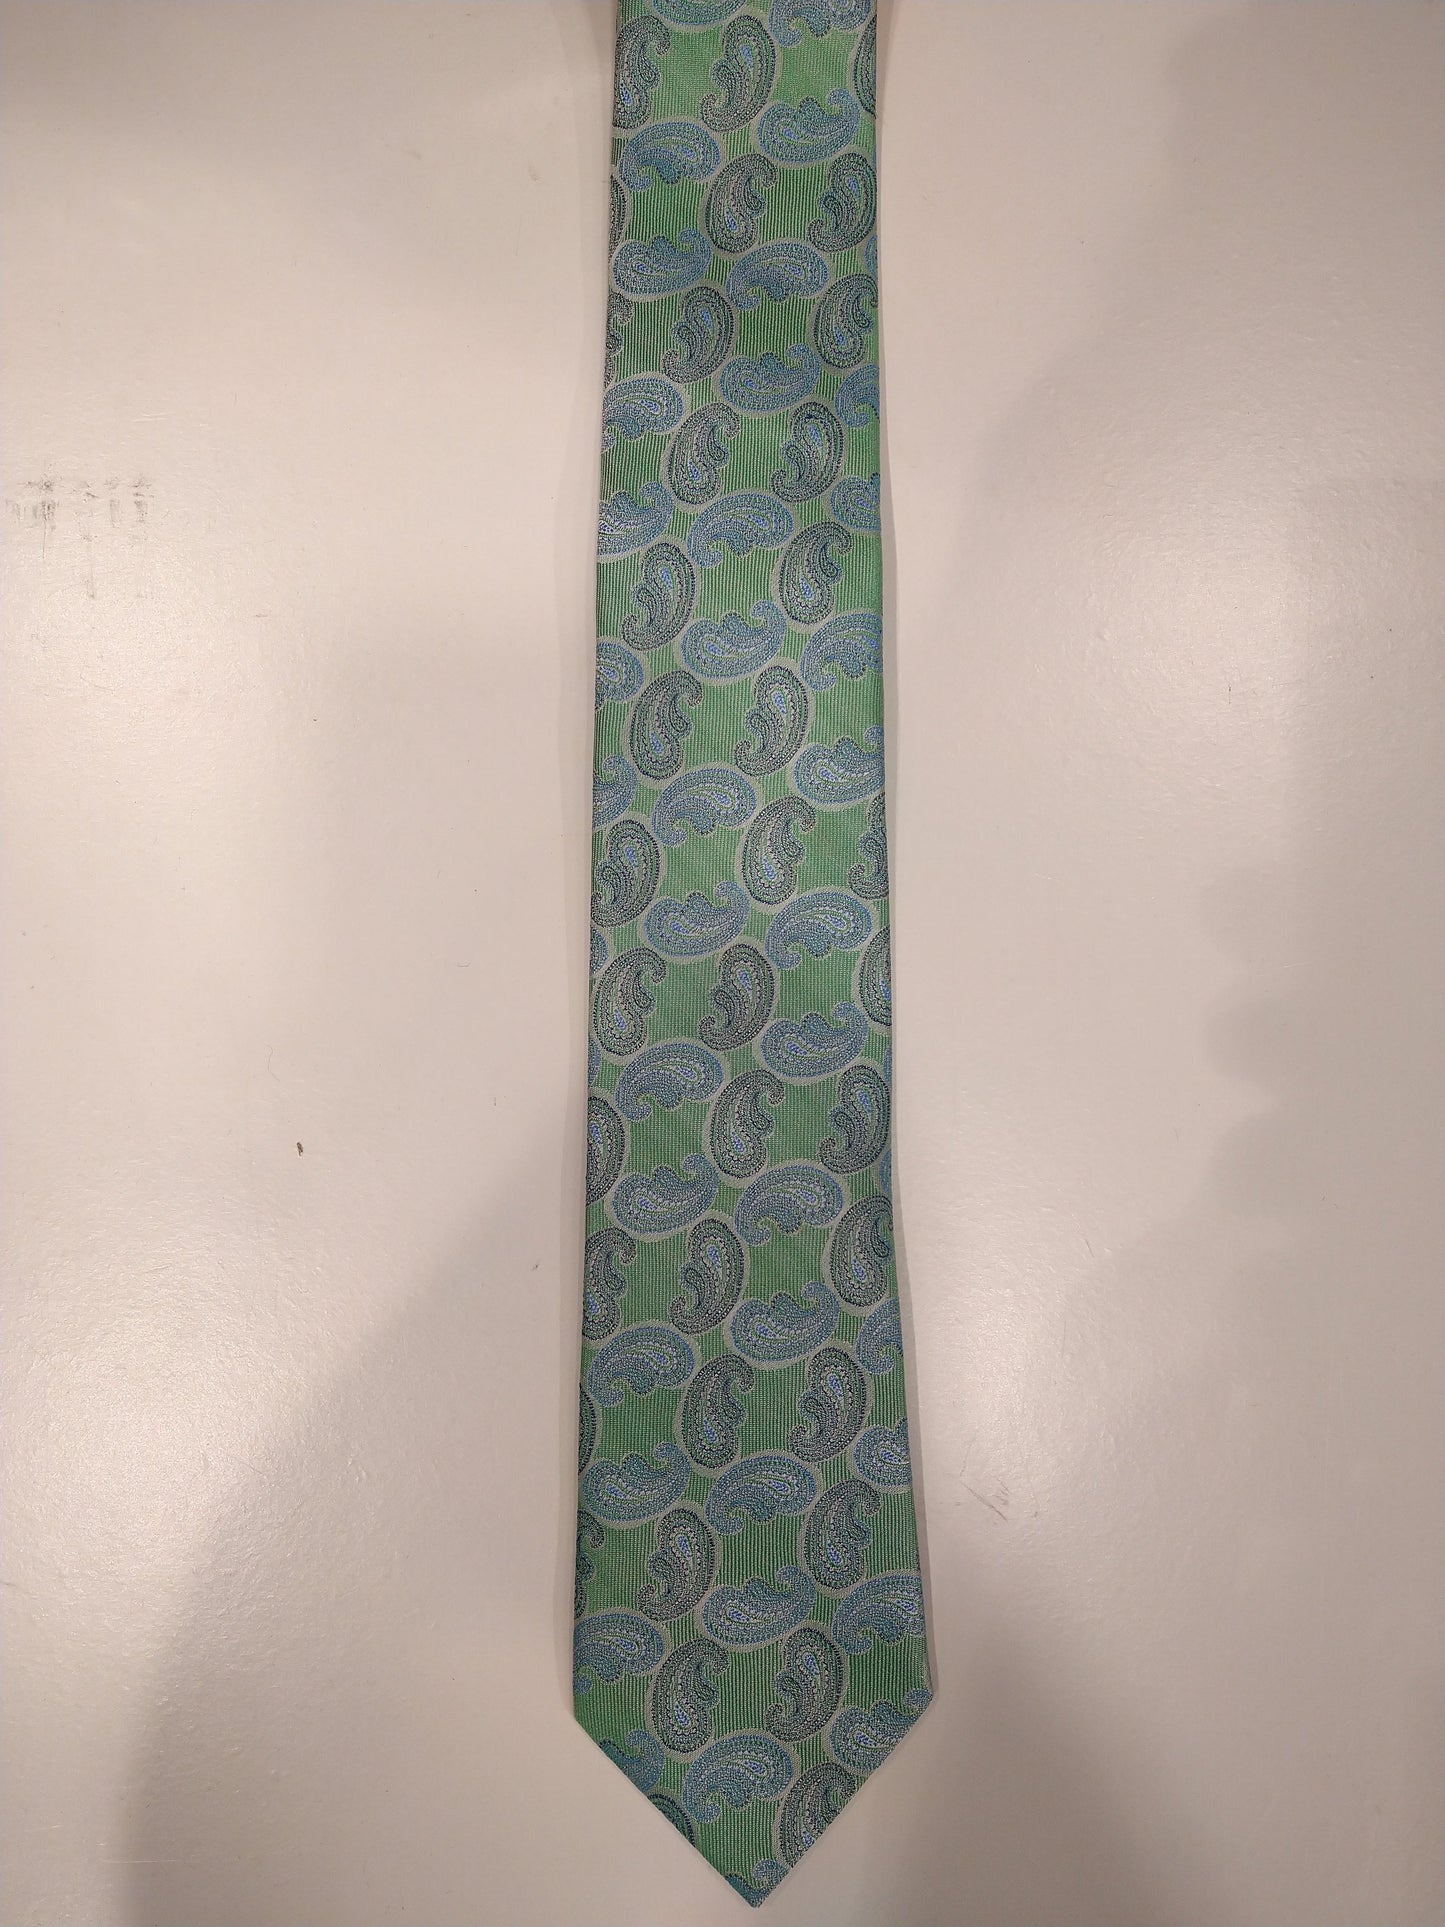 Max Goodman silk tie. Blue green motif.